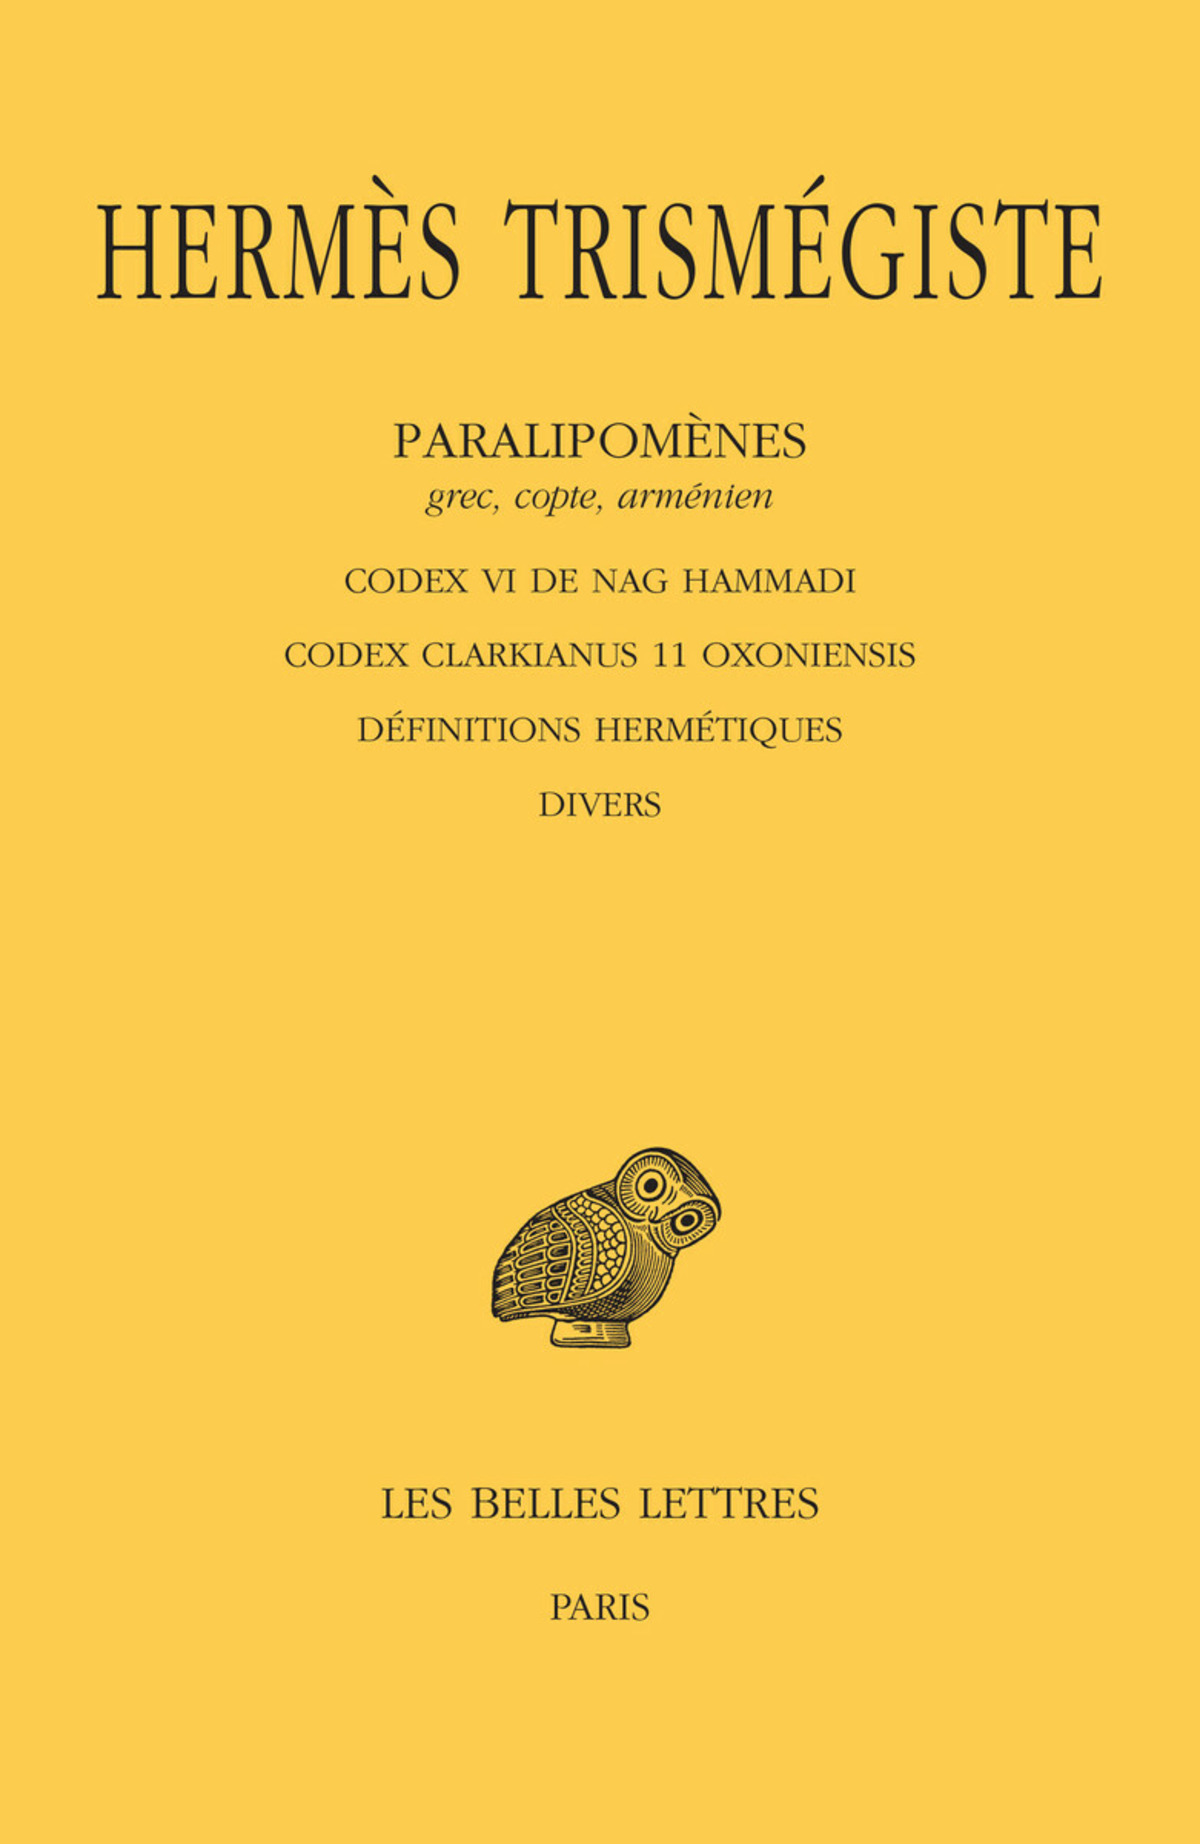 Hermès Trismégiste. Paralipomènes. Tome V : Codex VI de Nag Hammadi, Codex Clarkianus 11 Oxoniensis, Définitions hermétiques, Divers